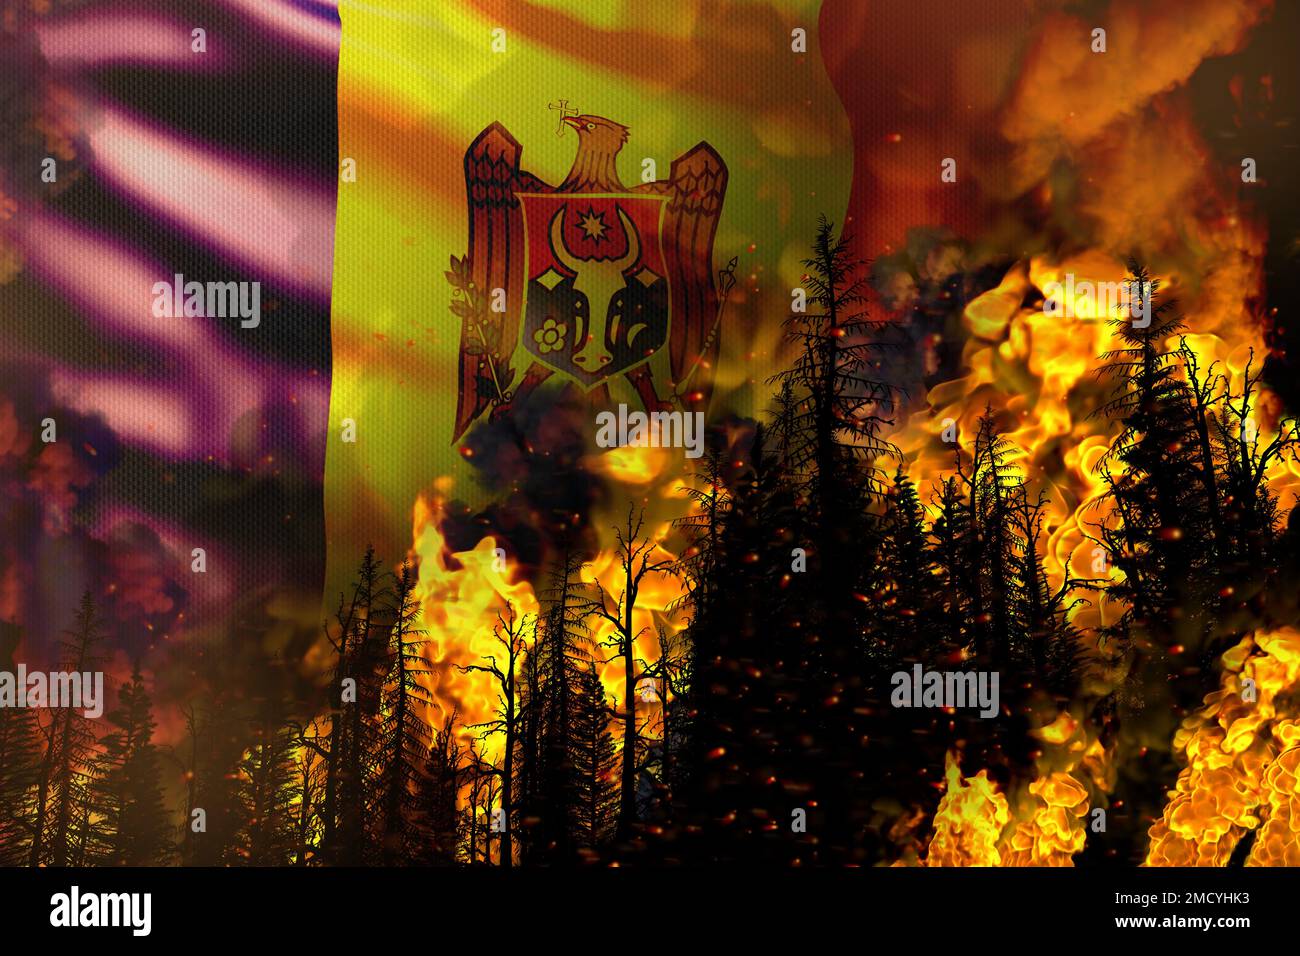 Concepto de desastre natural de incendio forestal - fuego infernal en los árboles en el fondo de la bandera de Moldavia - ilustración 3D de la naturaleza Foto de stock